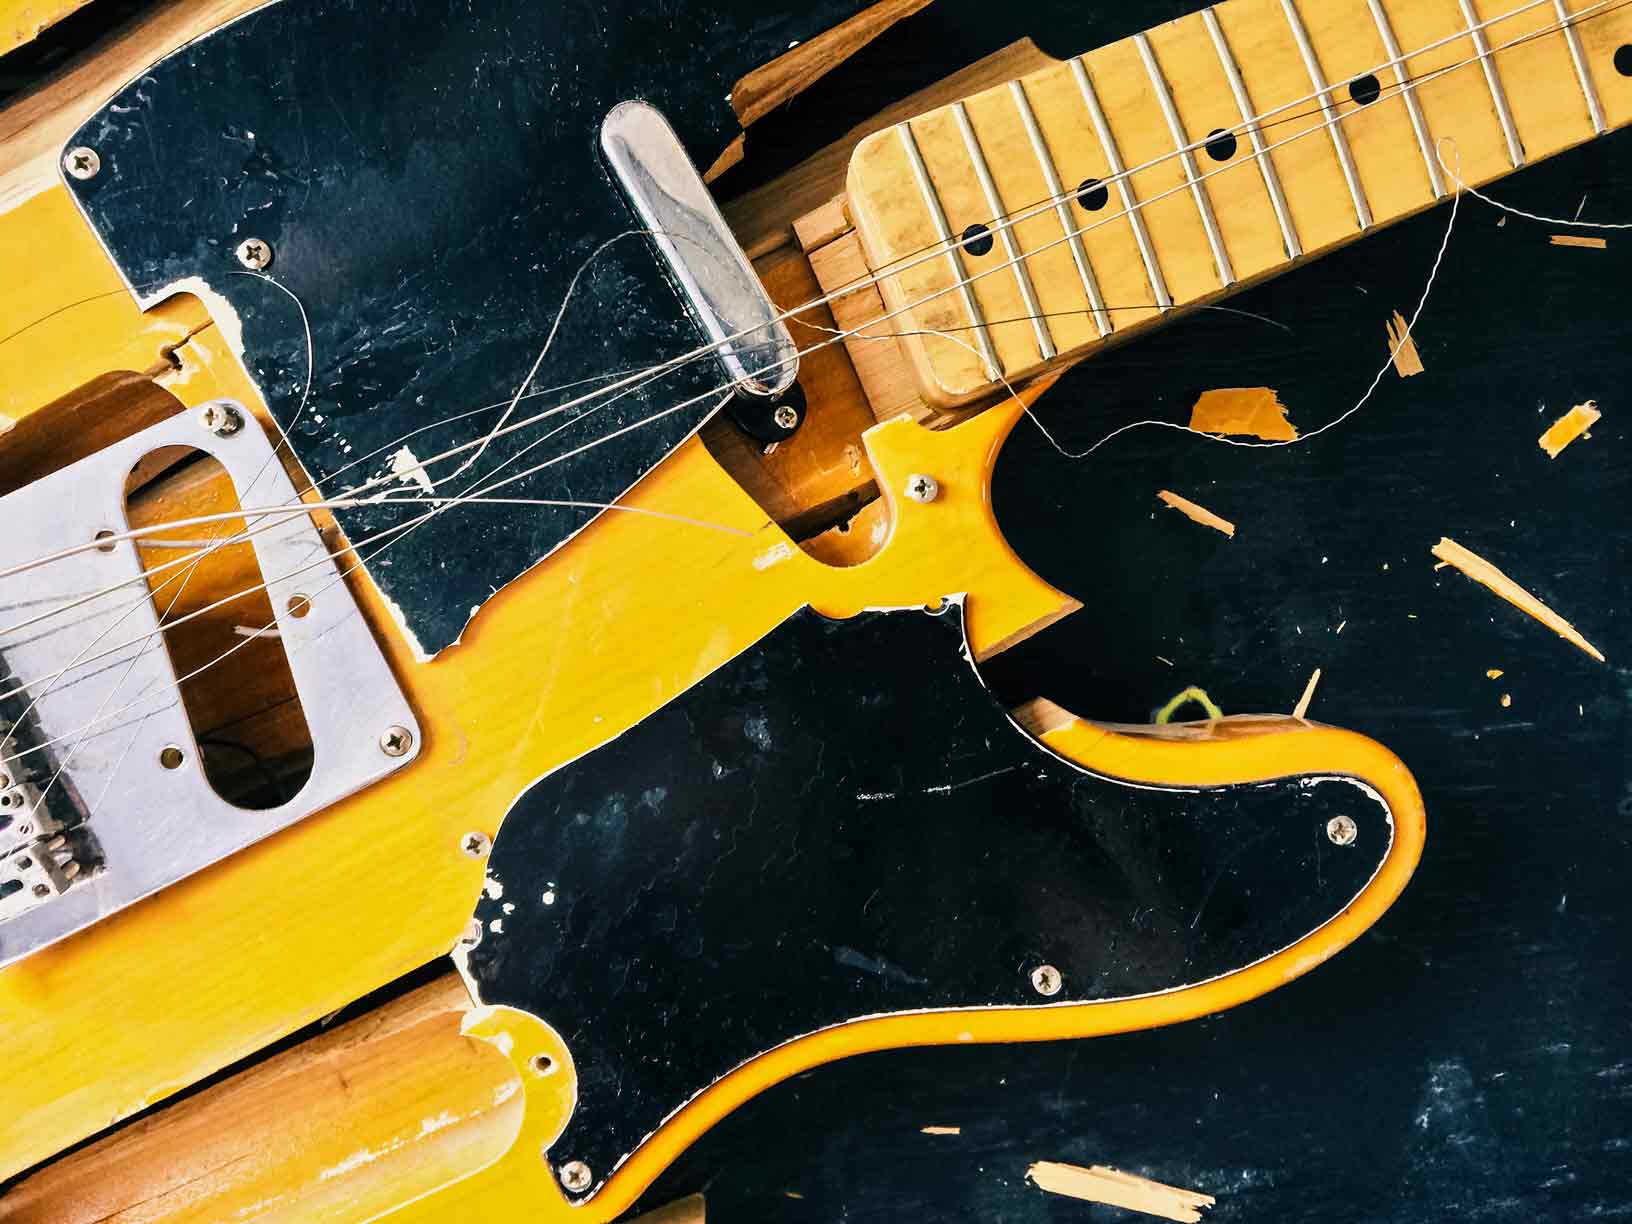 A propósito de Phoebe Bridgers, una brevísima historia del rock n’ roll y guitarras rotas